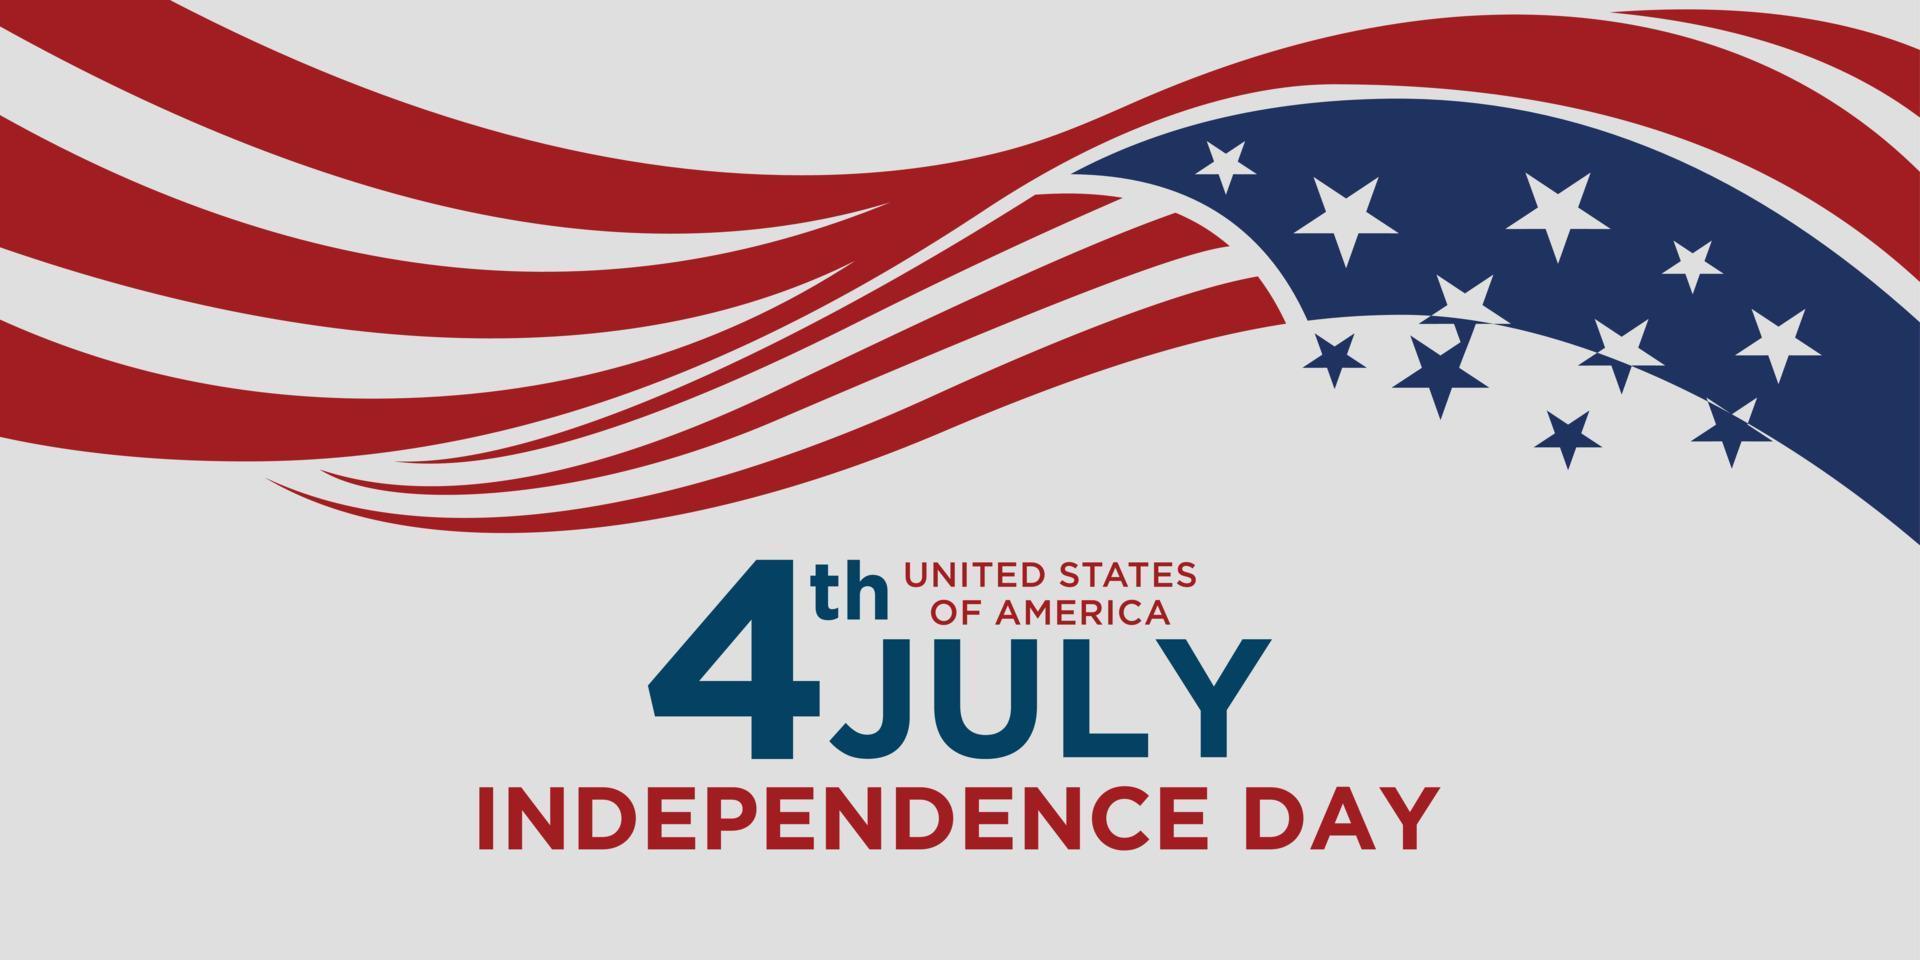 felices vacaciones del 4 de julio en los estados unidos. Ilustración de vector de tarjeta de felicitación de día de la independencia americana